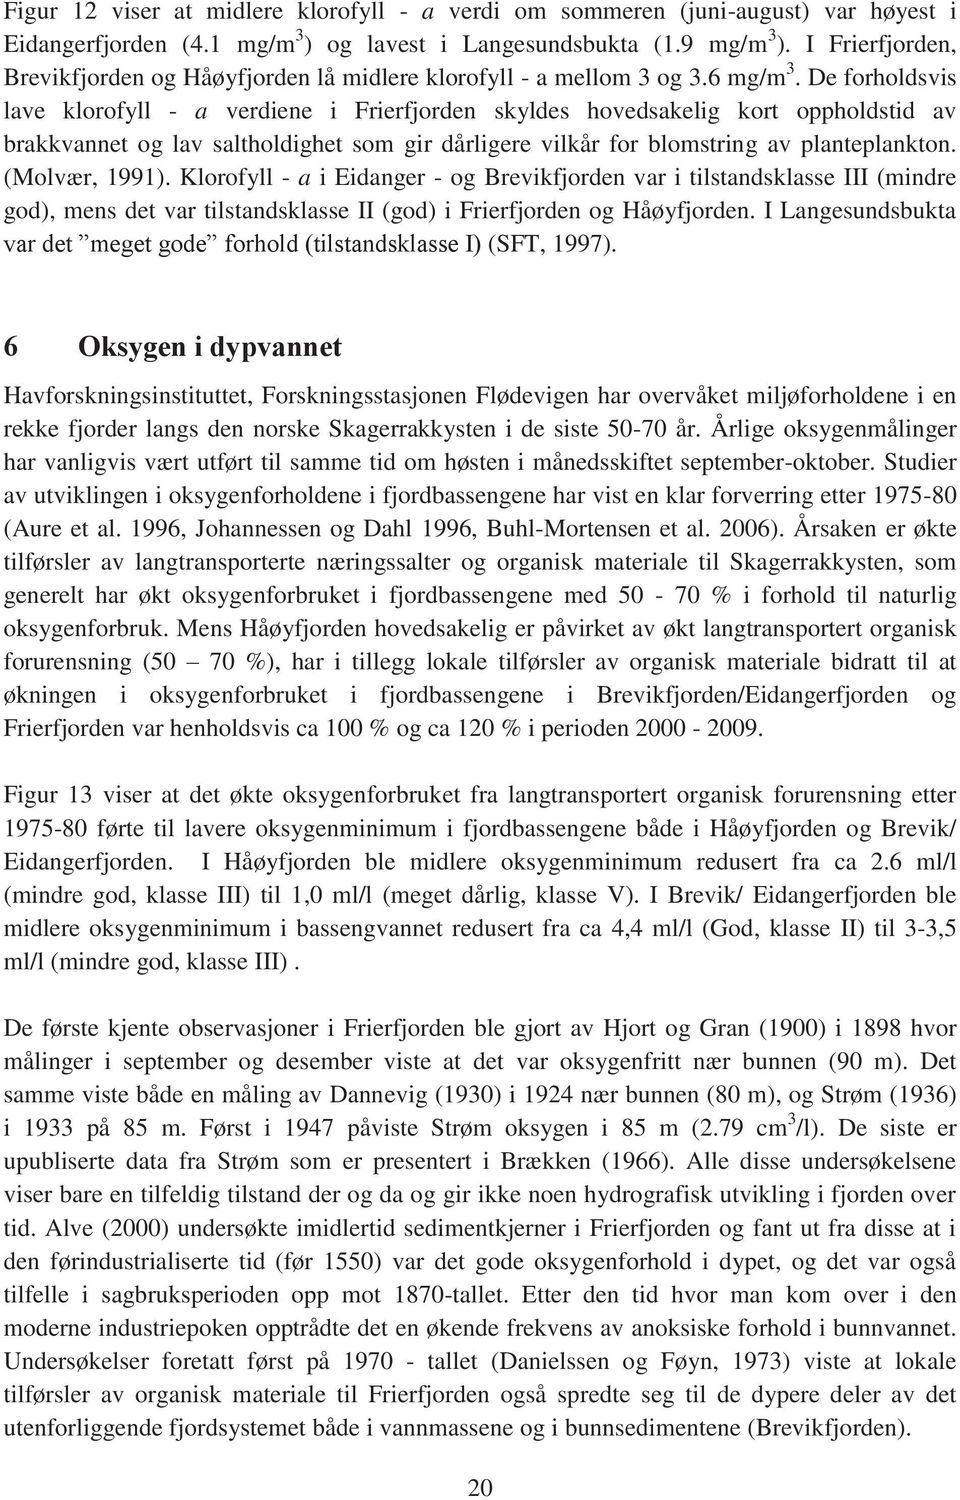 De forholdsvis lave klorofyll - a verdiene i Frierfjorden skyldes hovedsakelig kort oppholdstid av brakkvannet og lav saltholdighet som gir dårligere vilkår for blomstring av planteplankton.